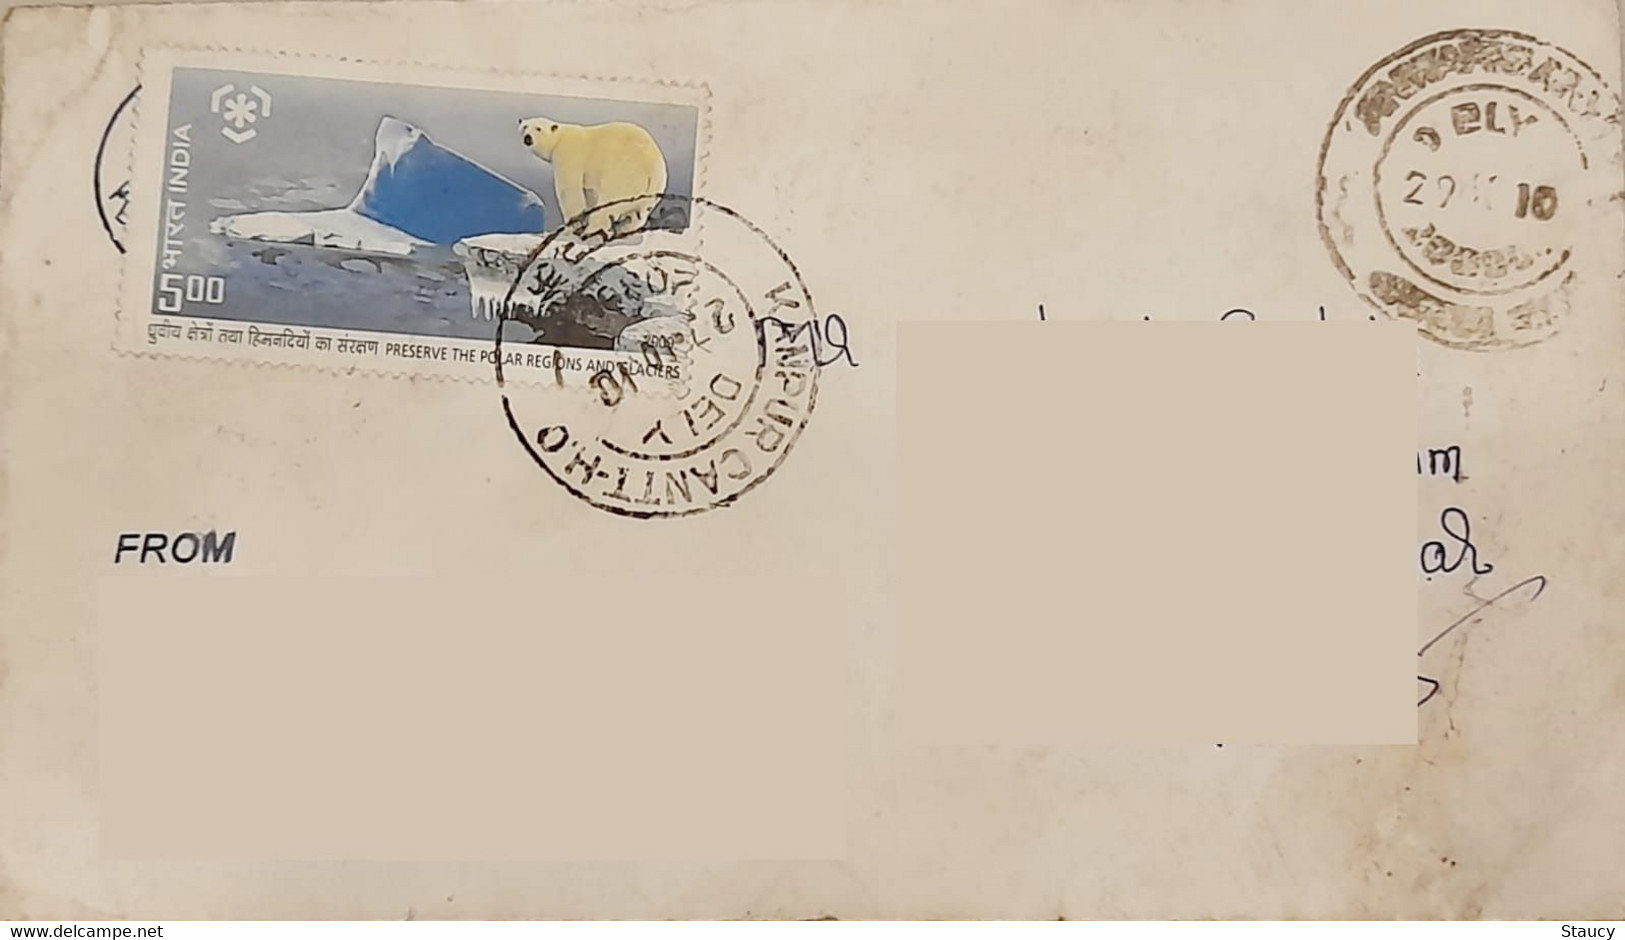 INDIA 2010 Preserve Polar Region & Glaciers Stamps Franked On Postal Cover As Per Scan - Schützen Wir Die Polarregionen Und Gletscher